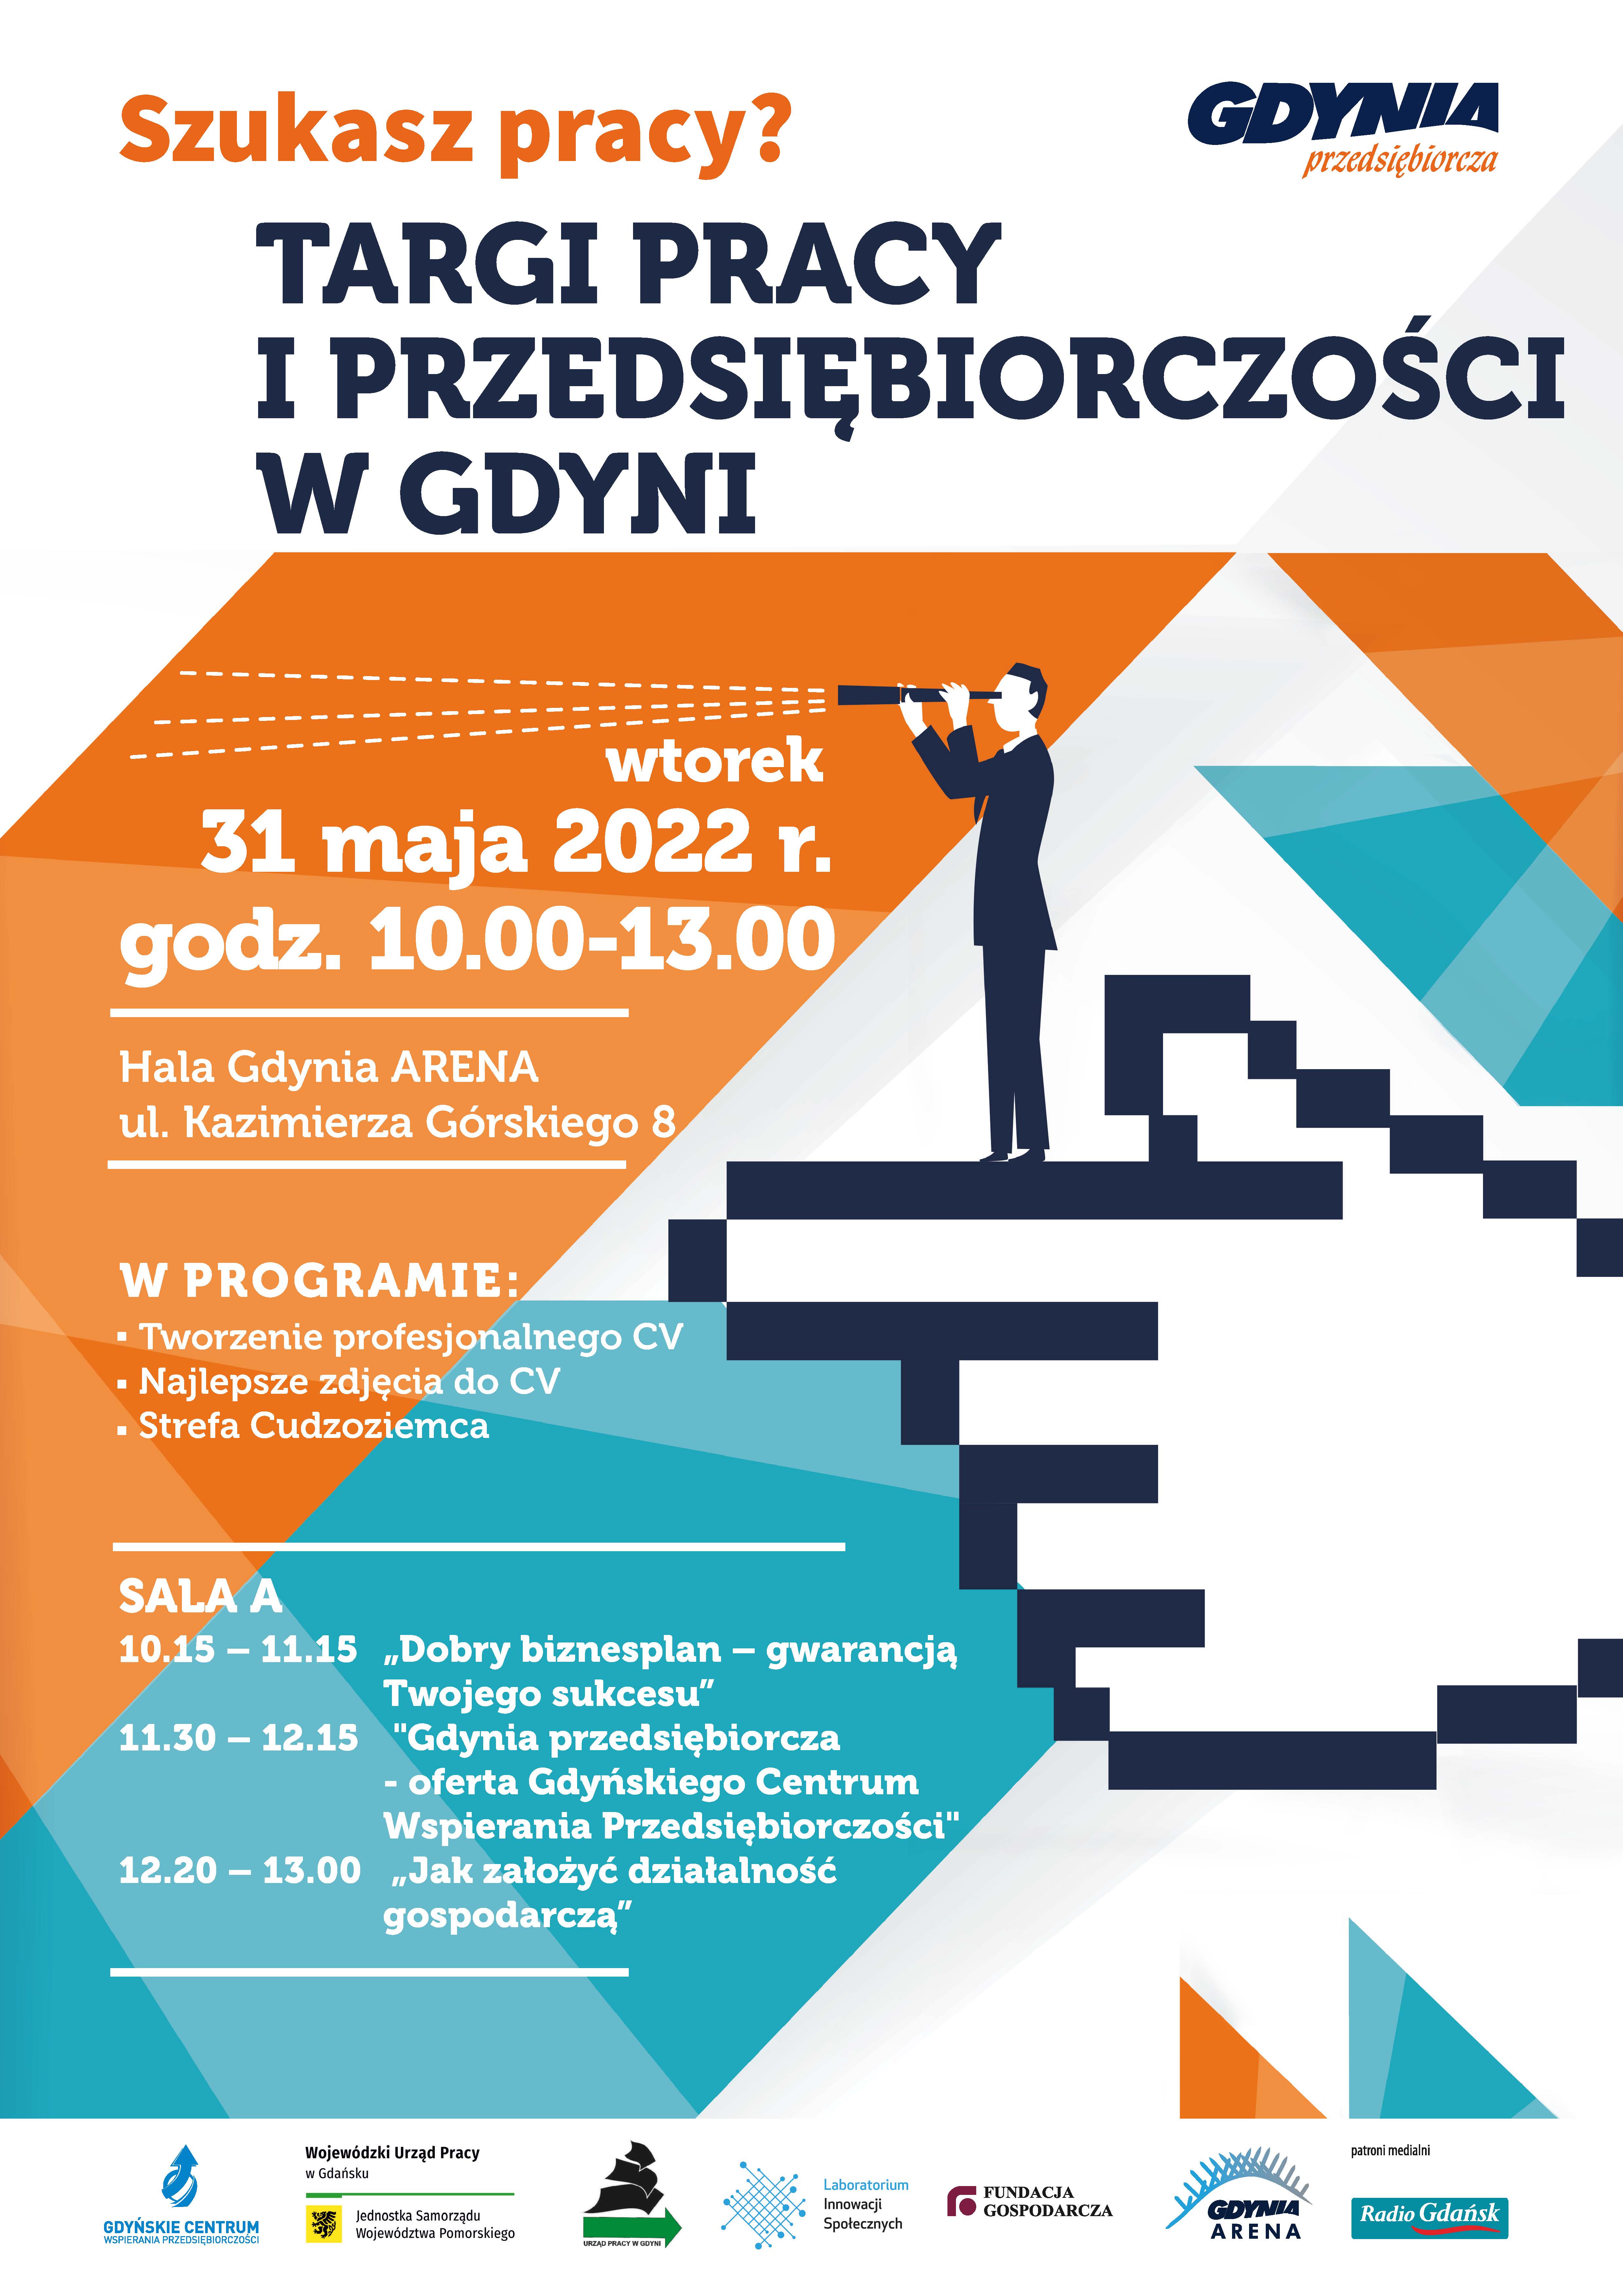 Plakat reklamujący targi pracy w Gdyni w dniu 31 grudnia 2022 roku